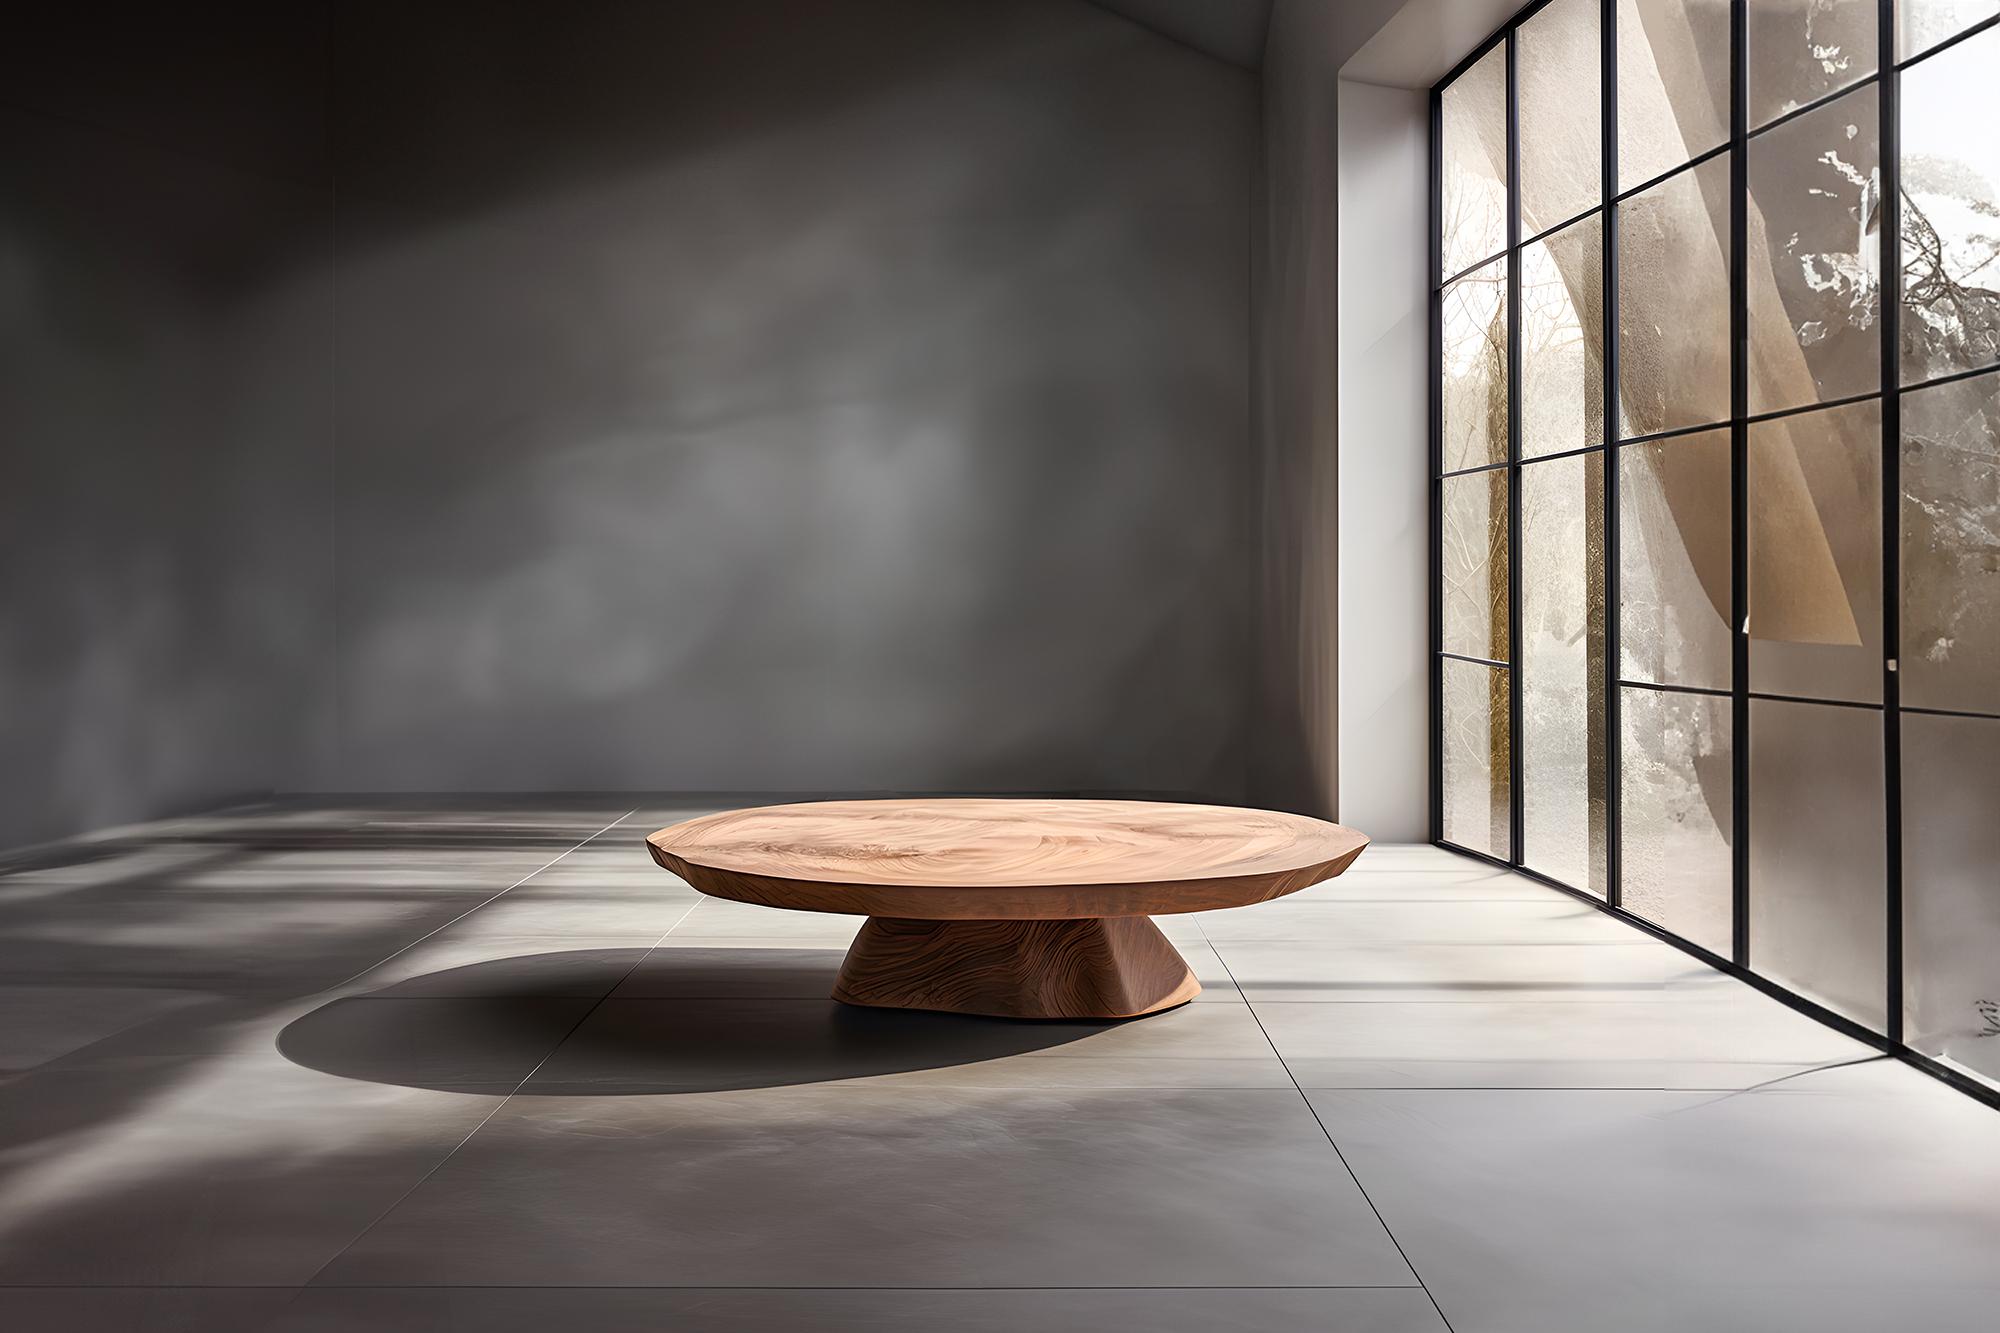 Skulpturaler Couchtisch aus Massivholz, Mitteltisch Solace S49   von Joel Escalona


Die Tischserie Solace, entworfen von Joel Escalona, ist eine Möbelkollektion, die dank ihrer sinnlichen, dichten und unregelmäßigen Formen Ausgewogenheit und